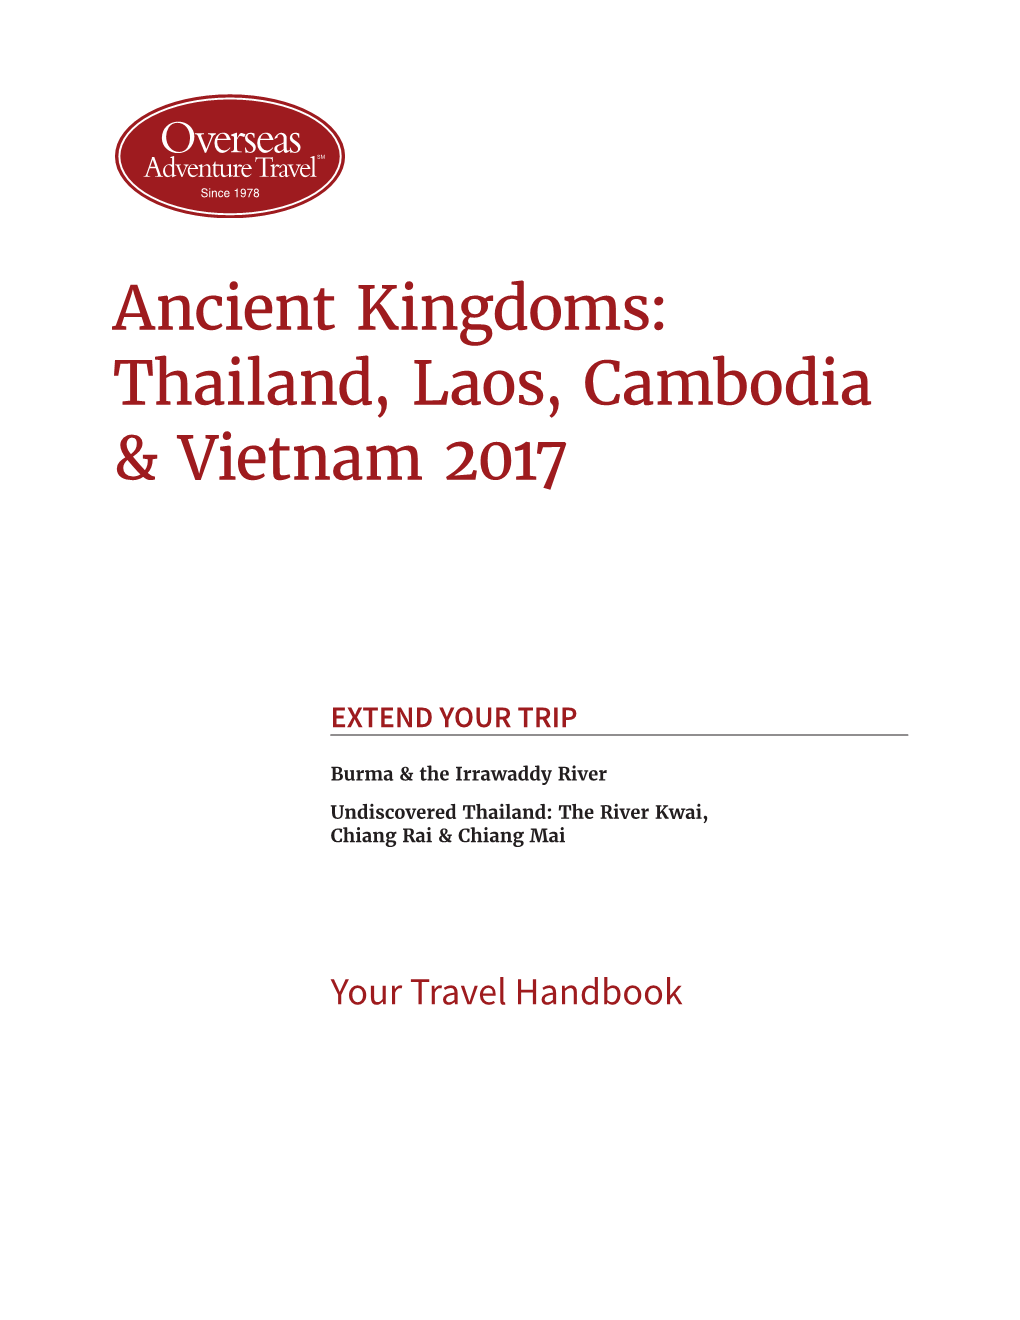 Thailand, Laos, Cambodia & Vietnam 2017